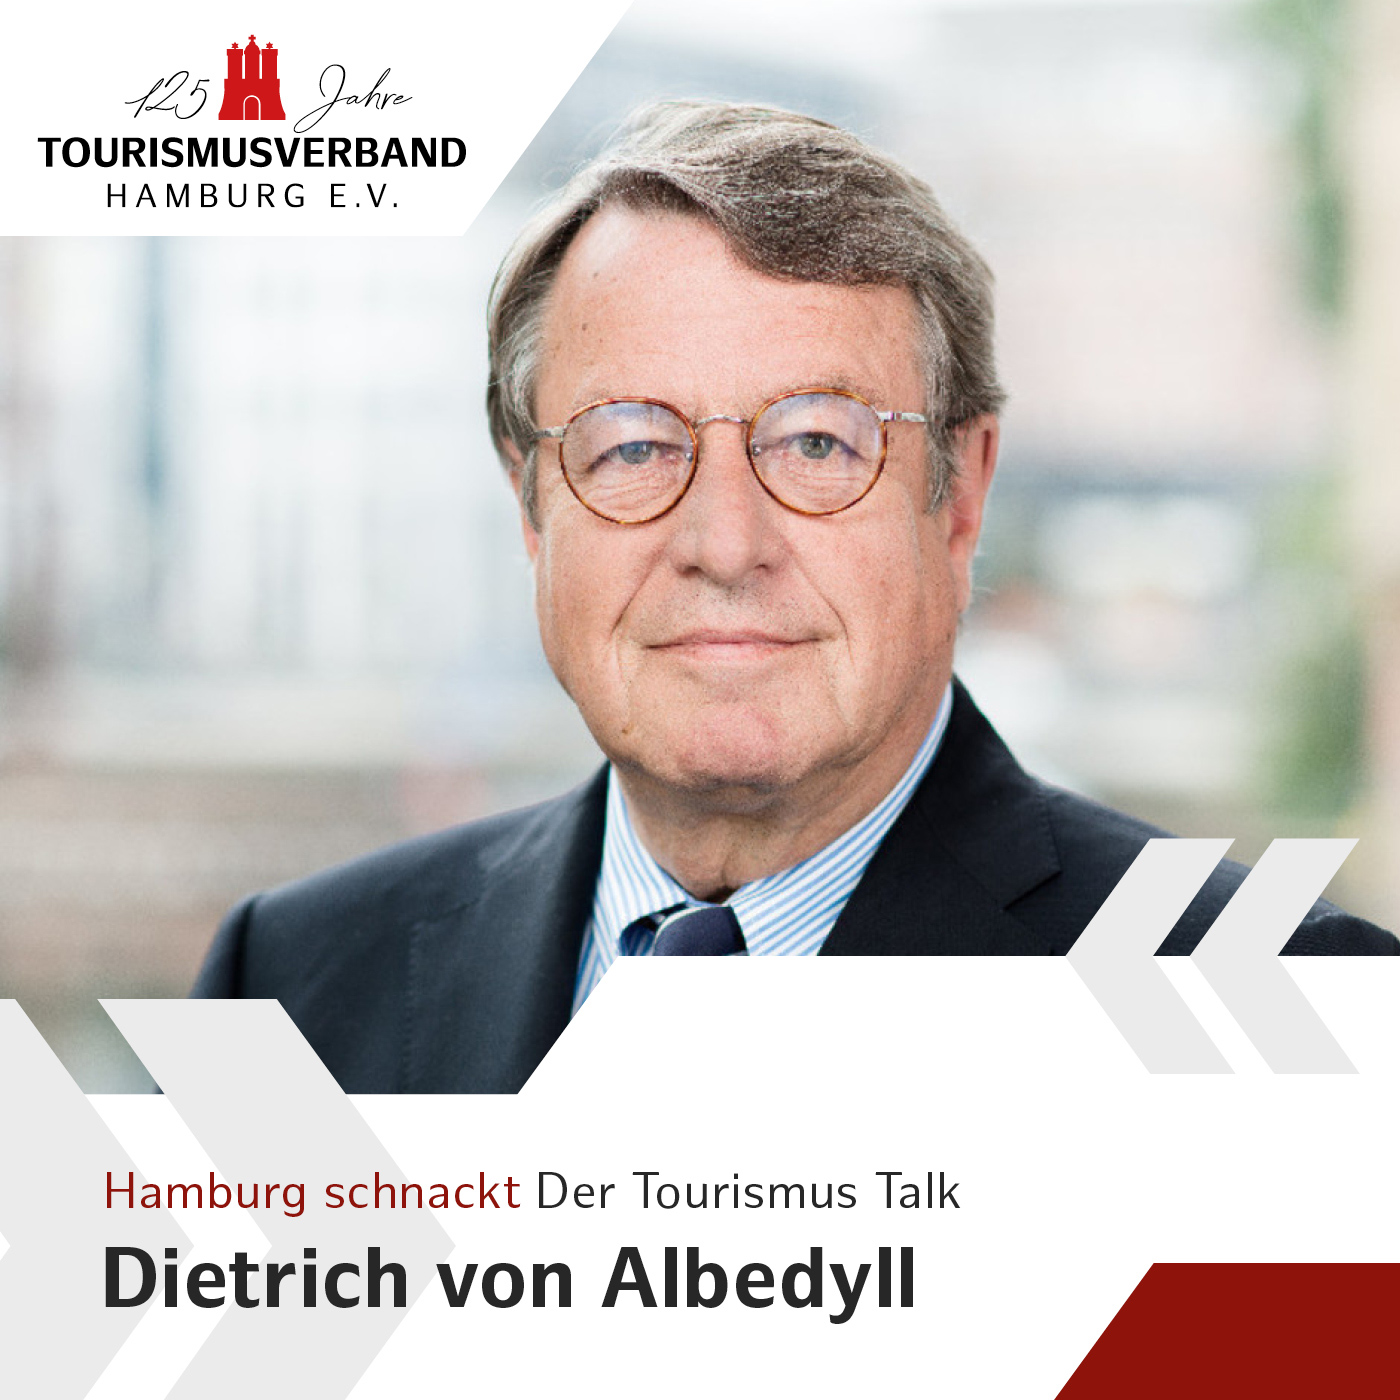 Hamburg schnackt mit Dietrich von Albedyll